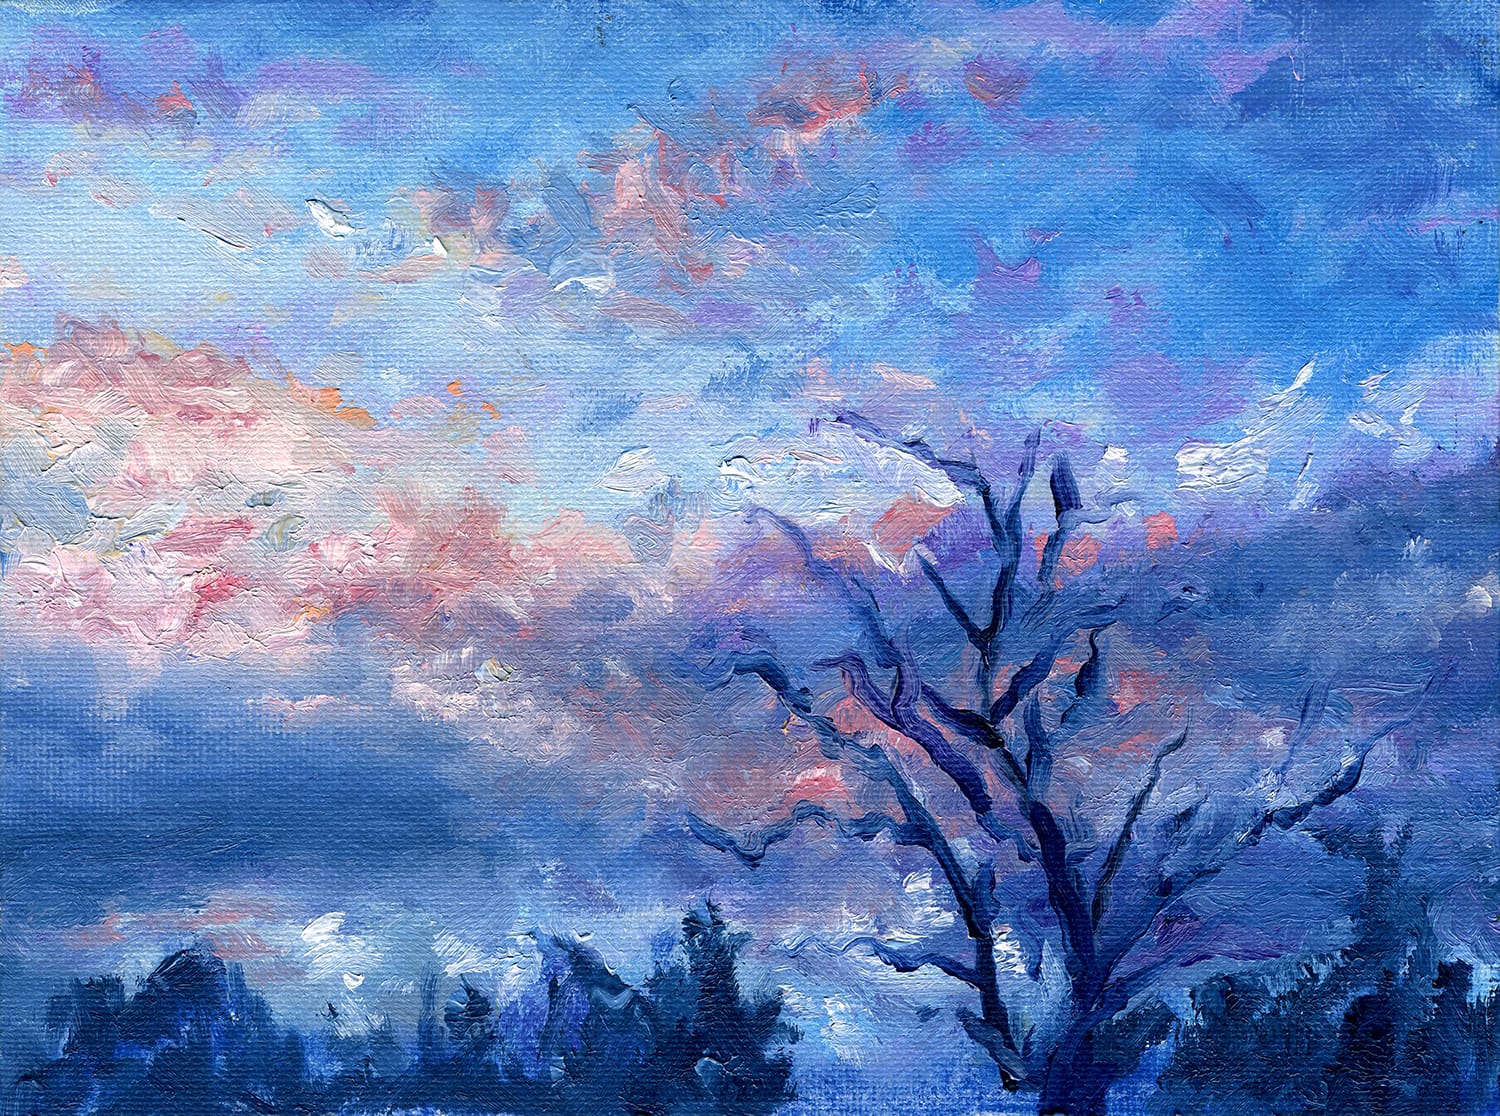 https://mlyw5iergkau.i.optimole.com/cb:MAE1.4e8b9/w:auto/h:auto/q:mauto/f:best/https://andrewgaia.com/wp-content/uploads/Sky-Landscape-Oil-Painting-Impressionist-Original.jpg